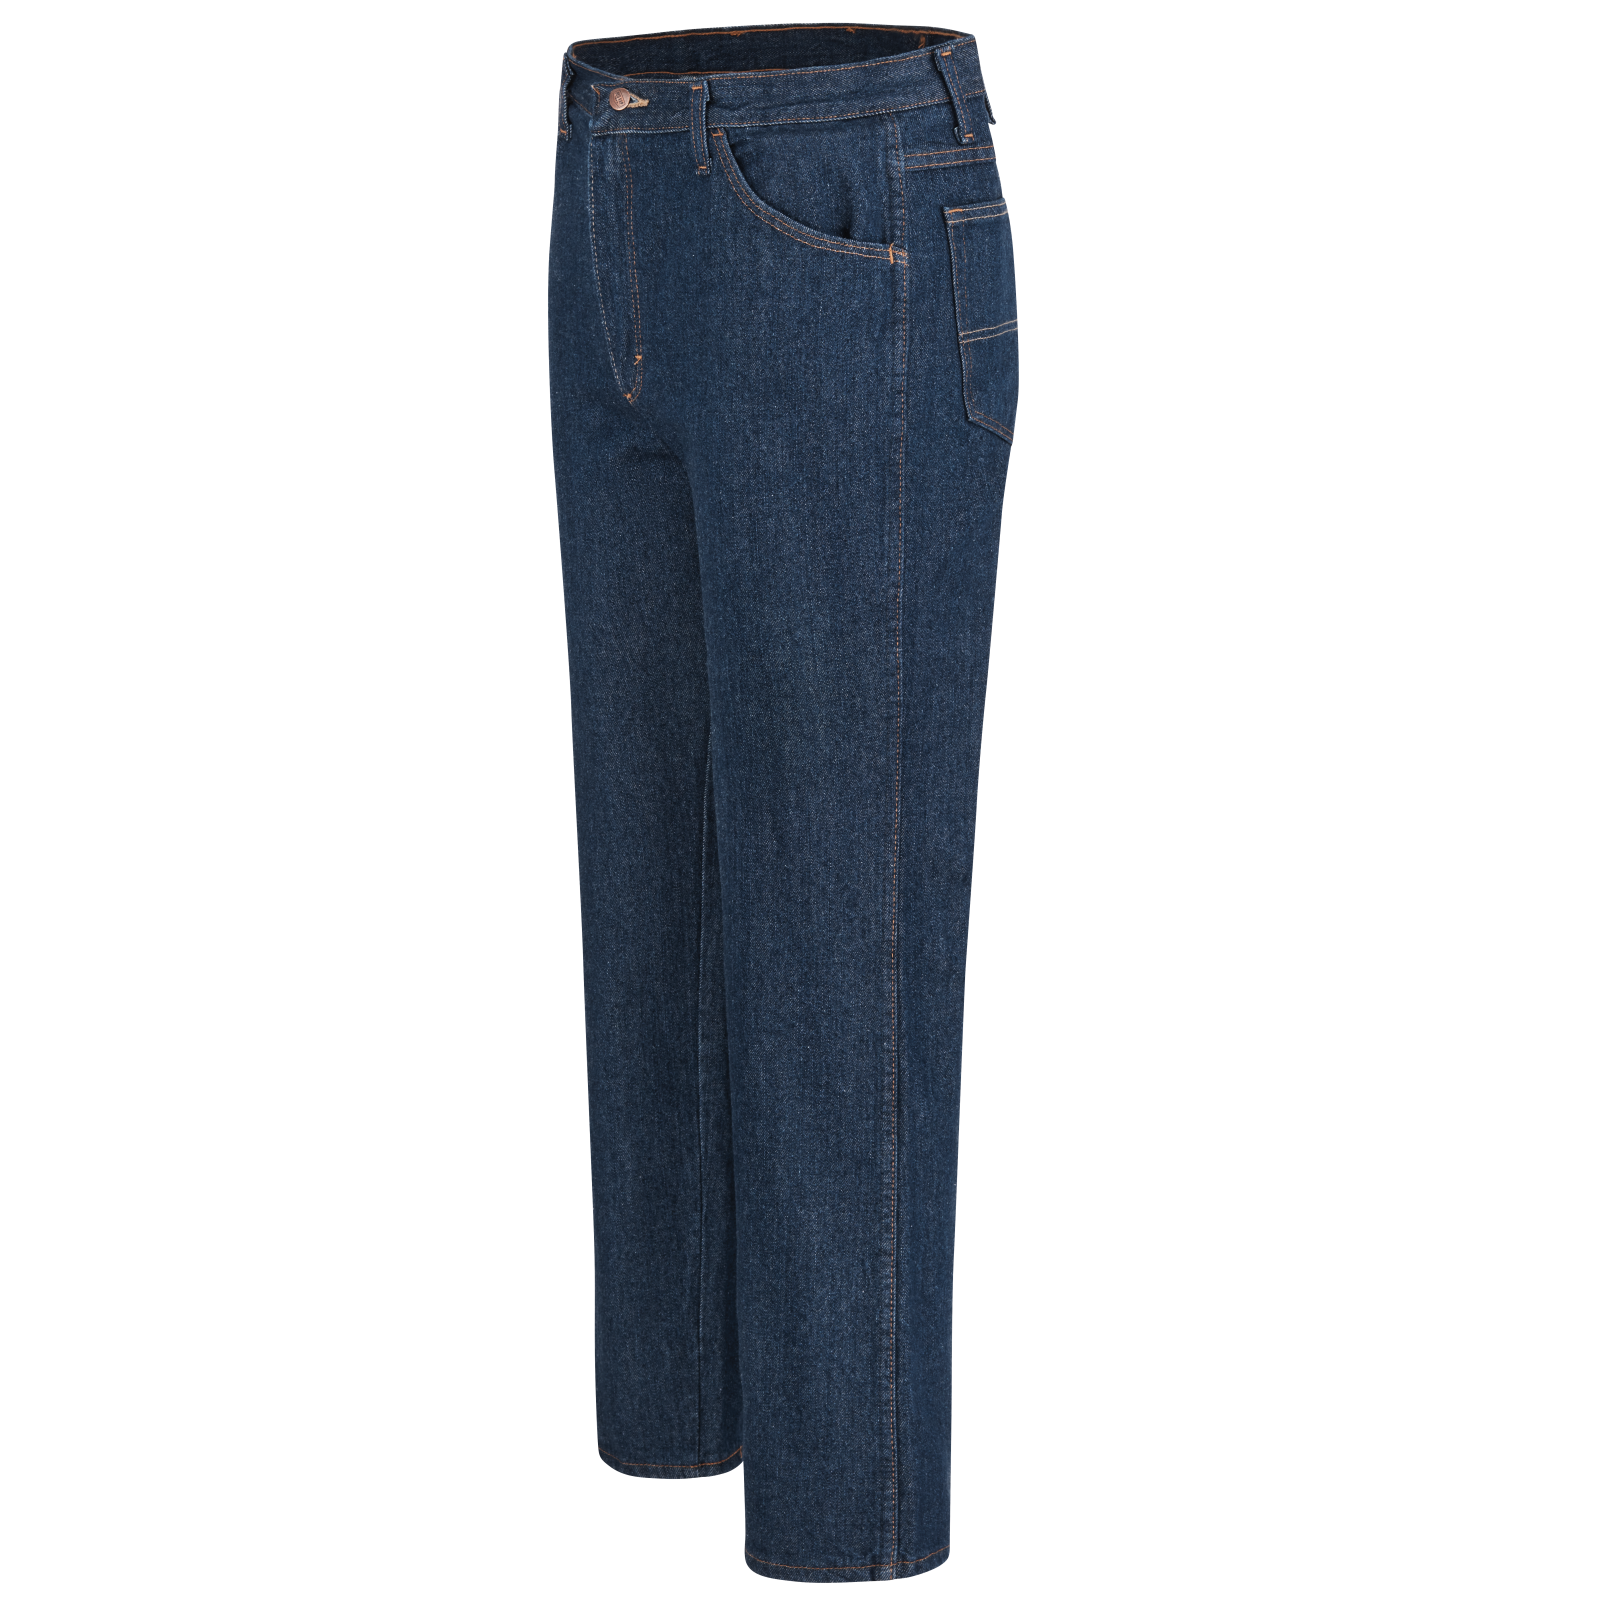 Round Buttocks Men's Jeans & denim pants | INDERWEAR